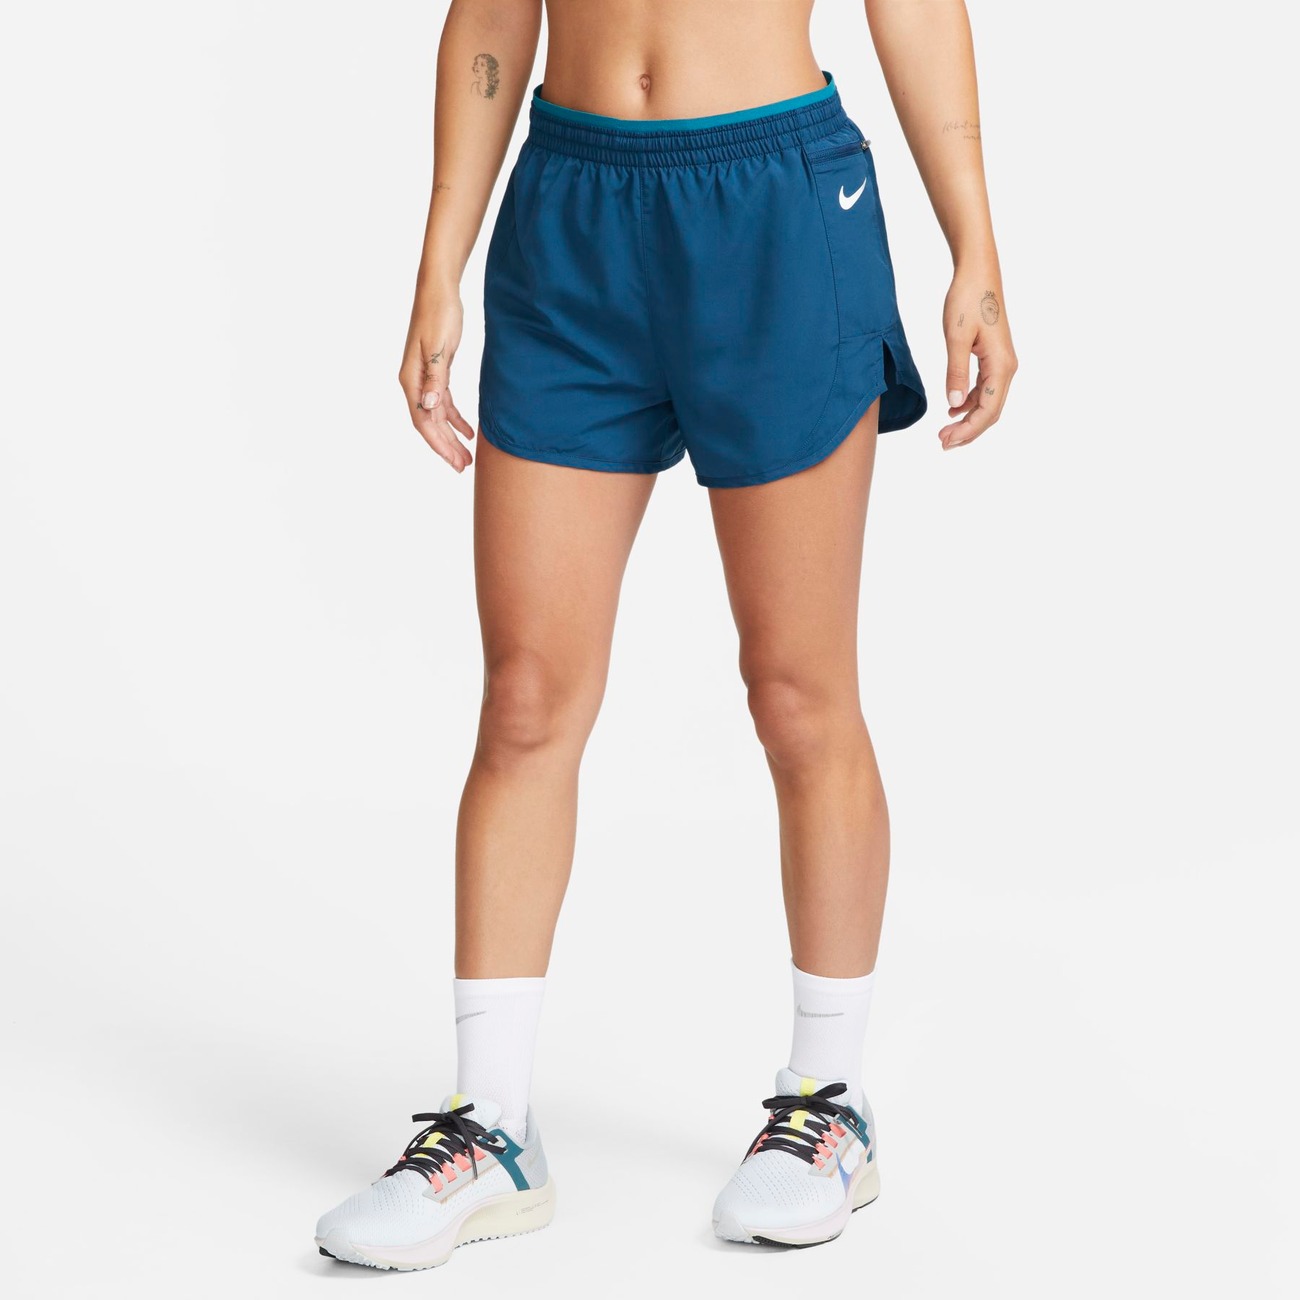 Shorts Nike Tempo Running Feminino